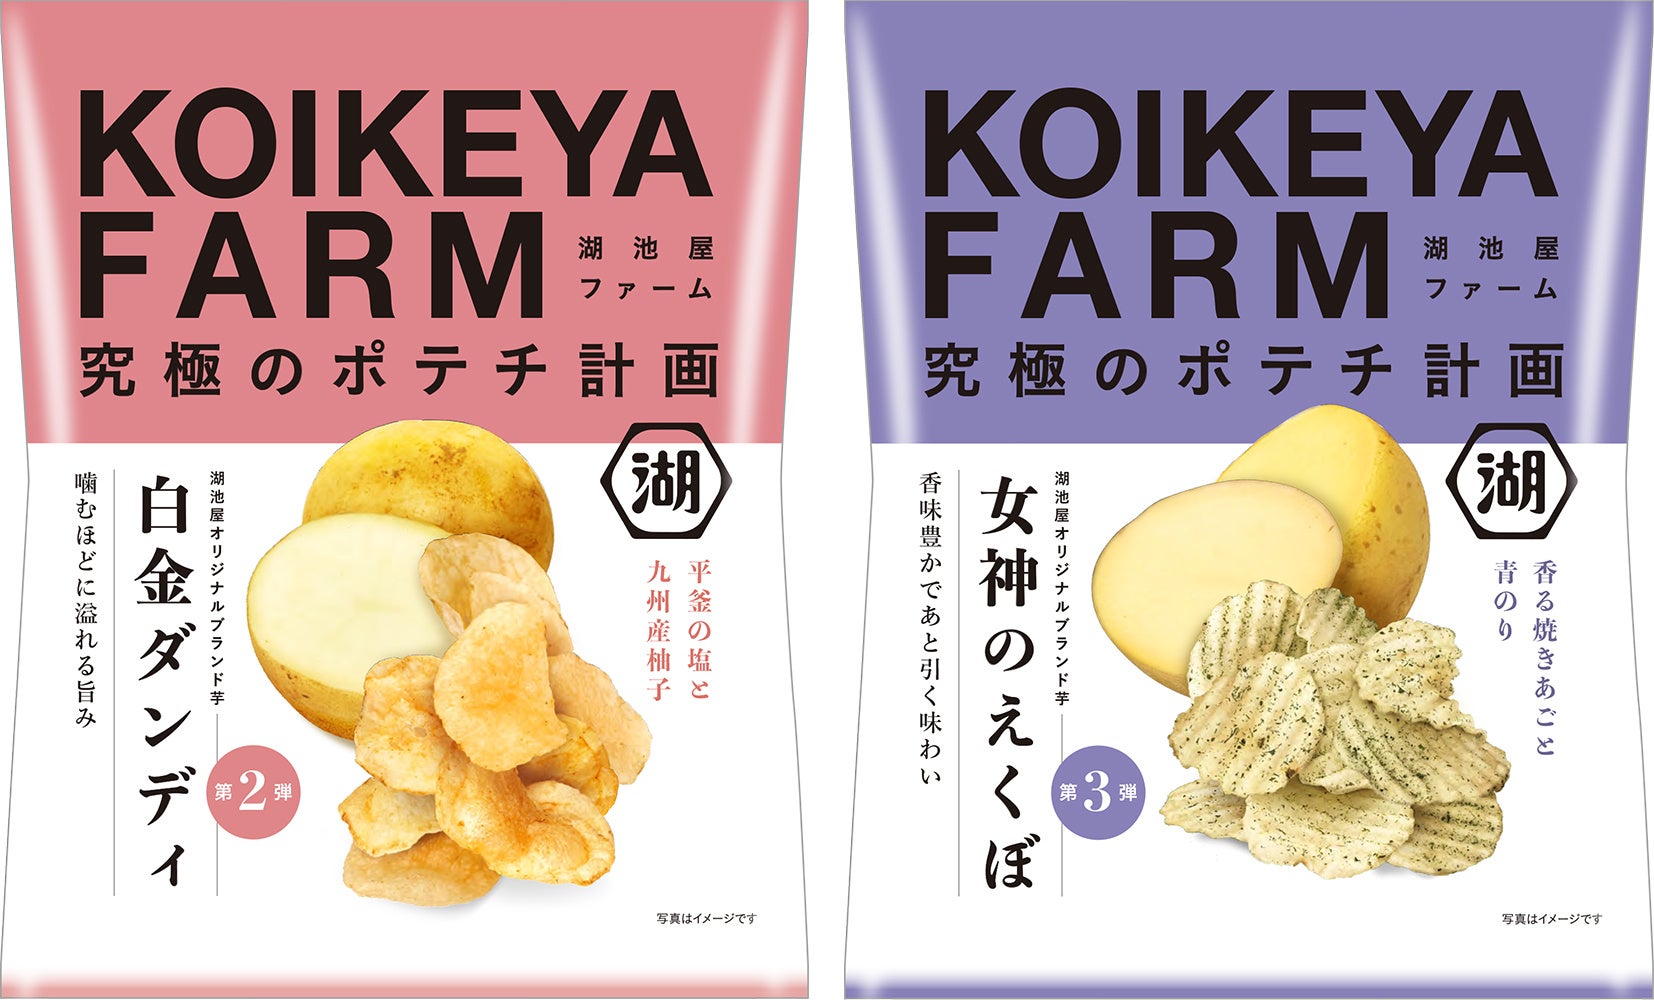 湖池屋の挑戦する“日本産じゃがいものブランド化・価値向上” 　湖池屋オリジナルブランド芋でつくる究極のポテトチップス「KOIKEYA FARM」 プロジェクト、本格始動！